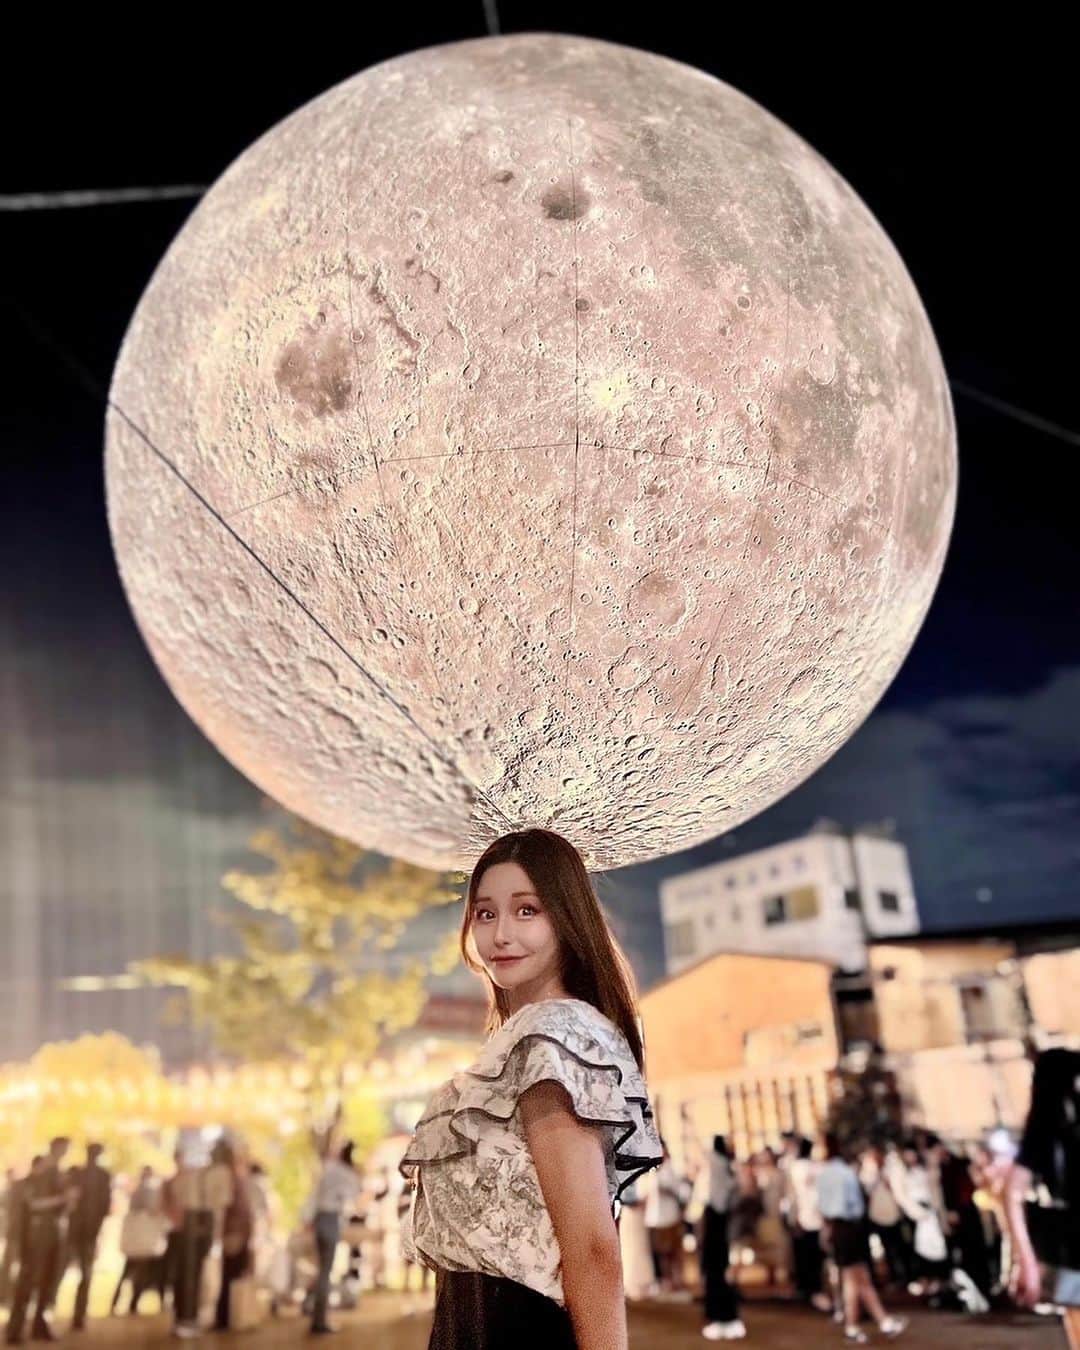 利咲のインスタグラム：「巨大な月が下北沢に！「ムーンアートナイト下北沢」@moonartnight_shimokitazawa へ行って来ました！幻想的な月が美しいアートフェスです🌕 私はアートが大好きなのでこういったイベントが世田谷区で行われていることがとても嬉しいです！  この月は海外アーティストのルーク・ジェラムの作品で、直径7mもあるそう。 夕方の明るい時間帯は不思議な惑星のようで、夜はライトアップされます。たくさんの方々が月を見に訪れていました。写真映えが凄い✨  また、アマンダ・パーラーの作品である巨大なウサギのインスタレーション「Intrude」は、カトリック世田谷教会とBONUS TRACKの駐車場にて見ることができます。 これ、一匹バージョンのウサギさんは実物がとにかく大きくて迫力があるので驚きますよ👀‼️  普段立ち入ることのできない東北沢駅屋上では鬼頭健吾が手掛ける作品、カラフルな線が織りなす「Lines」の空間を楽しむことができました。 チケットをNFTで購入するなど最新ツールをしていたりと新たな試みが素晴らしい🤩  月とウサギ🌕🐇なんて女子からしたらたまらないですよね〜 これだけではなく飲食店では限定メニューや天体観測のイベントなど、街全体がムーンアートナイトを盛り上げていてさすが文化と芸術の街、下北沢ですね。  下北沢はライブハウスや小劇場、古着屋さんのイメージだった方もいらっしゃると思いますが、それだけではなく街がどんどん開発され綺麗になって、ヨーロッパの雰囲気やアジアンストリートなどもあり、ぜひ今の下北を見て堪能して欲しいです✨ まち歩きがこんなに楽しい街はなかなかないですよ☺日本らしさもあるので海外の方にも喜んで頂ける雰囲気です。  こちらのイベントは中秋の名月の時期に合わせて開催されているそうですが、 今年は10/1(日)まで！  ぜひとも皆さんお立ち寄りください♪  #ムーンアートナイト下北沢 #ムーンアートナイト下北沢2023 #ムーンアートナイト #moonartnightshimokitazawa #moonartnightshimokitazawa2023 #artnight #アートナイト #下北線路街空き地 #東北沢駅屋上 #reload #カトリック世田谷教会 #シモキタエキウエ #BONUSTRACK #下北沢 #東北沢 #世田谷代田 #アートフェス #shimokitazawa  #LukeJerram #ルークジェラム #AmandaParer #アマンダパーラー #鬼頭健吾 #セーラームーン #🌙 #setagaya  #世田谷区 #世田谷区イベント #世田谷区議会議員 #若林りさ」